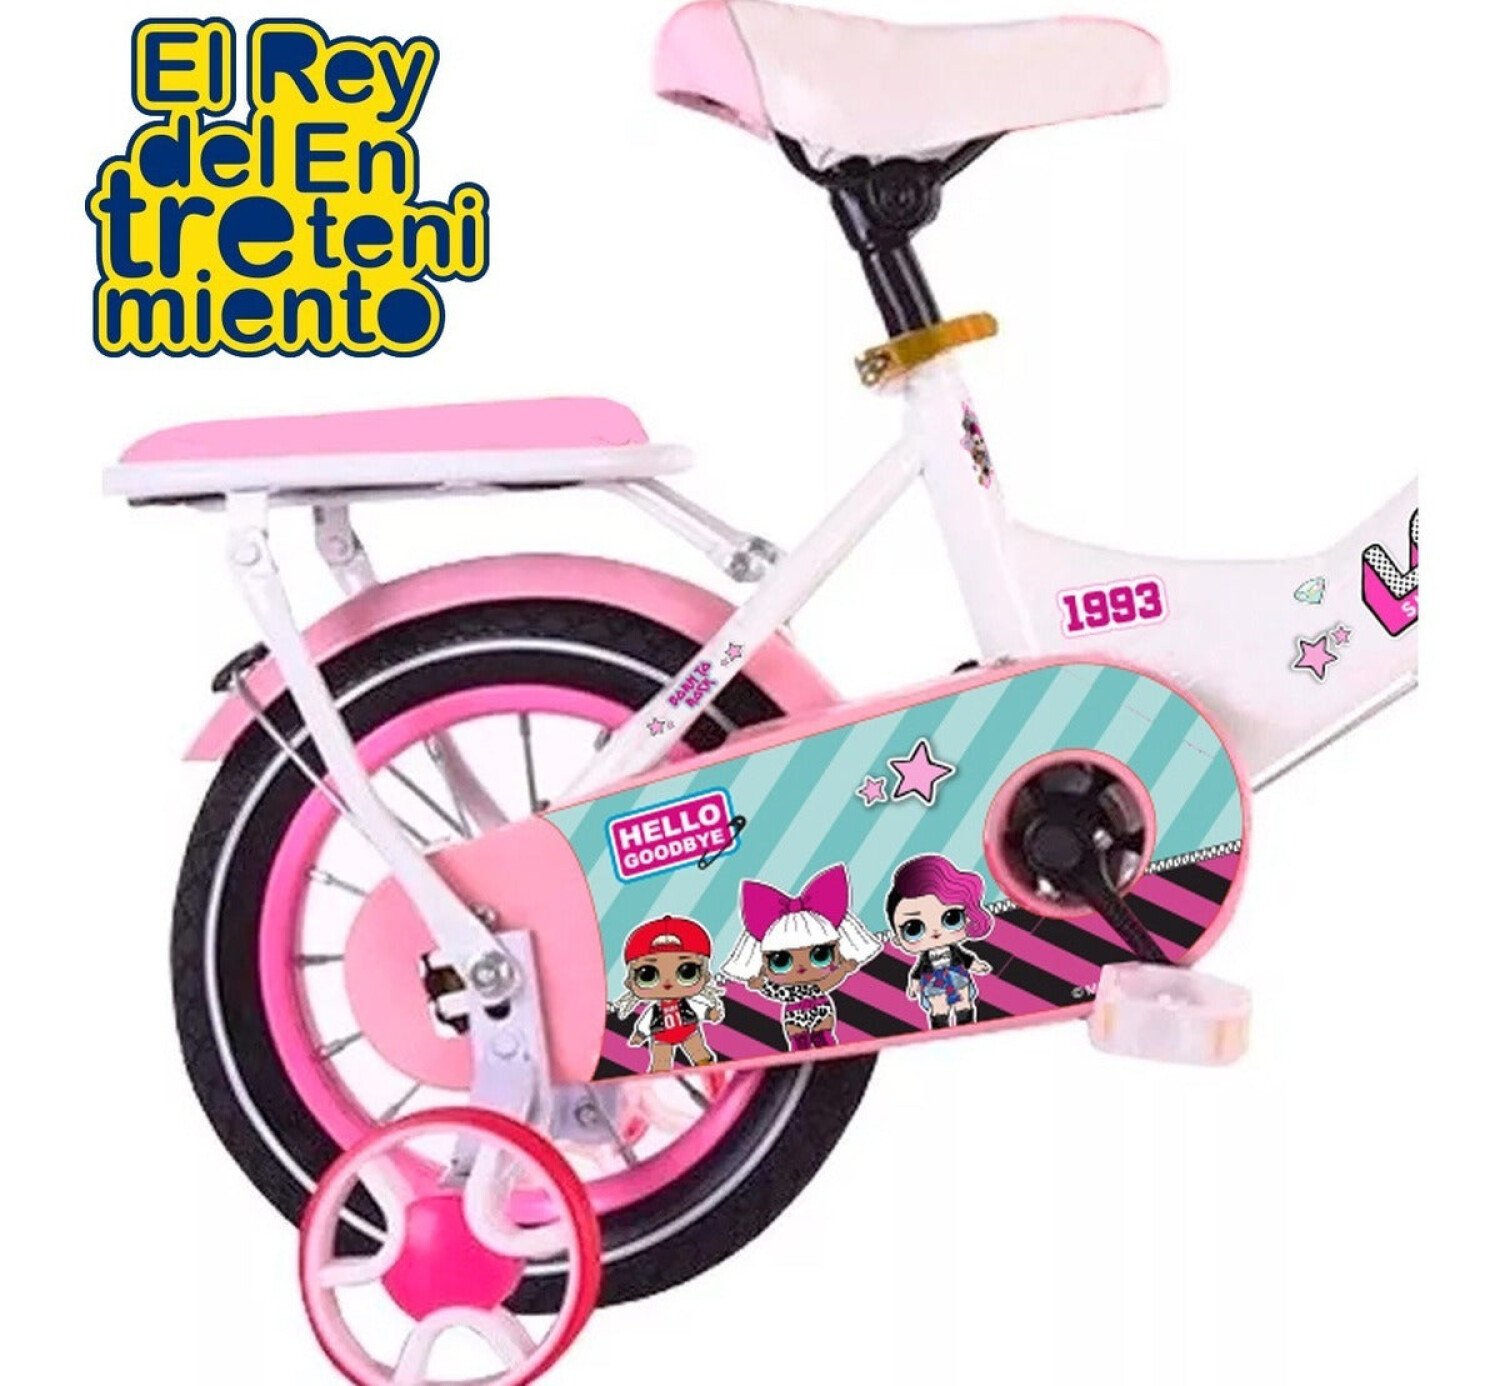 Bicicleta Paseo R16 Infantil Niña C/ Canasto y Accesorios - Rosado — El Rey  del entretenimiento